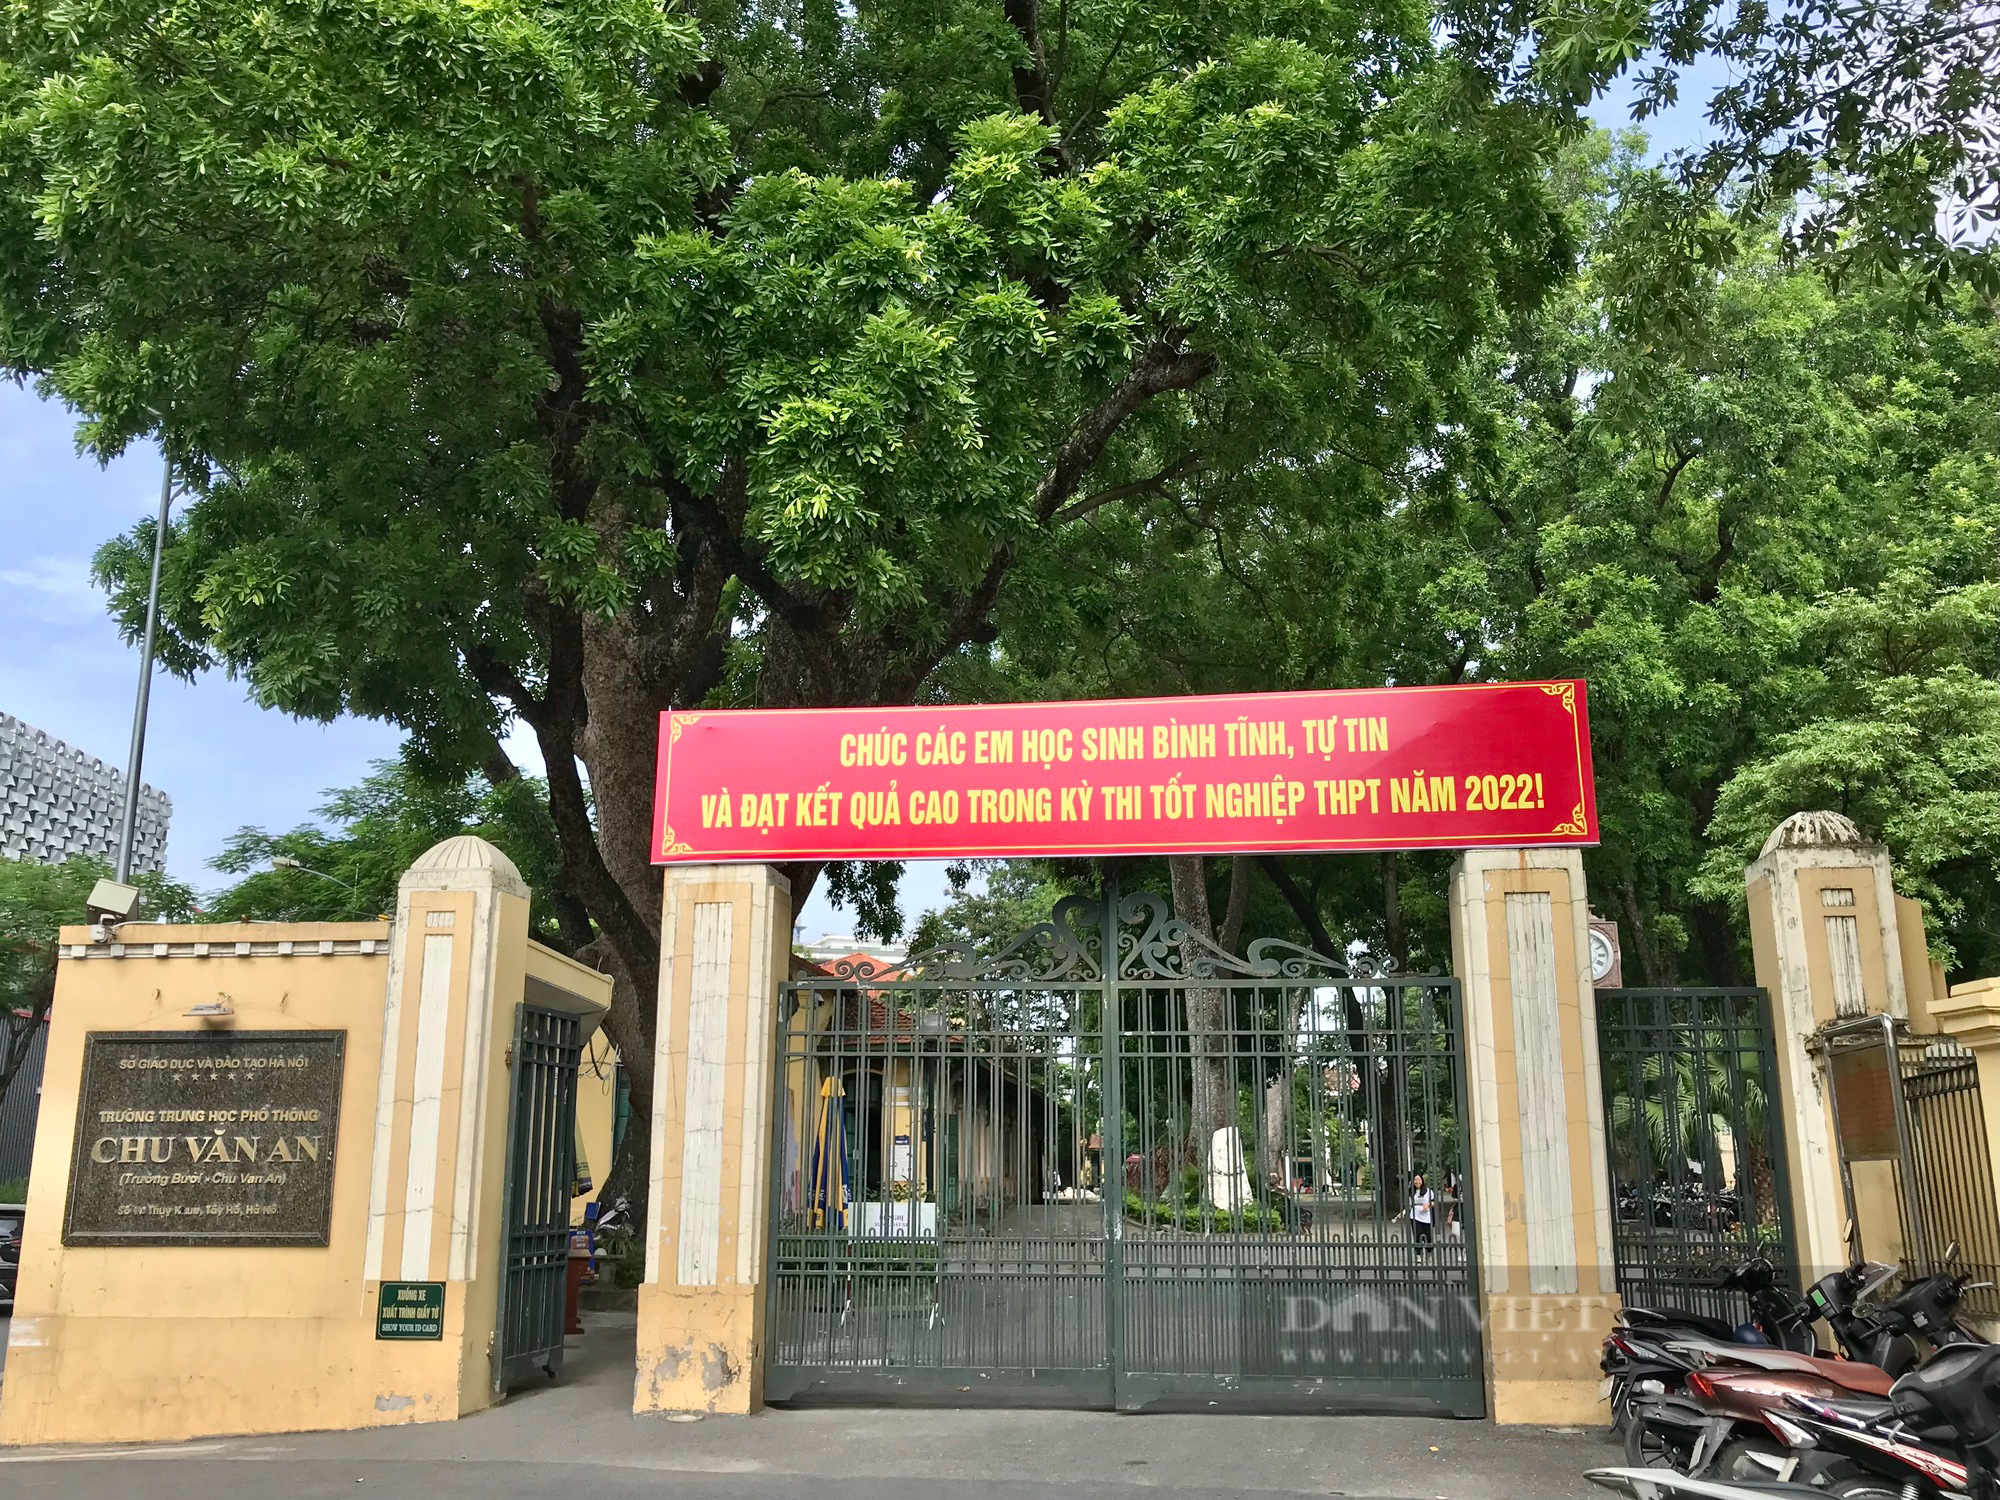 Chiêm ngưỡng thư viện cổ hơn 100 năm tuổi tại ngôi trường chuyên nổi tiếng ở Hà Nội - Ảnh 2.